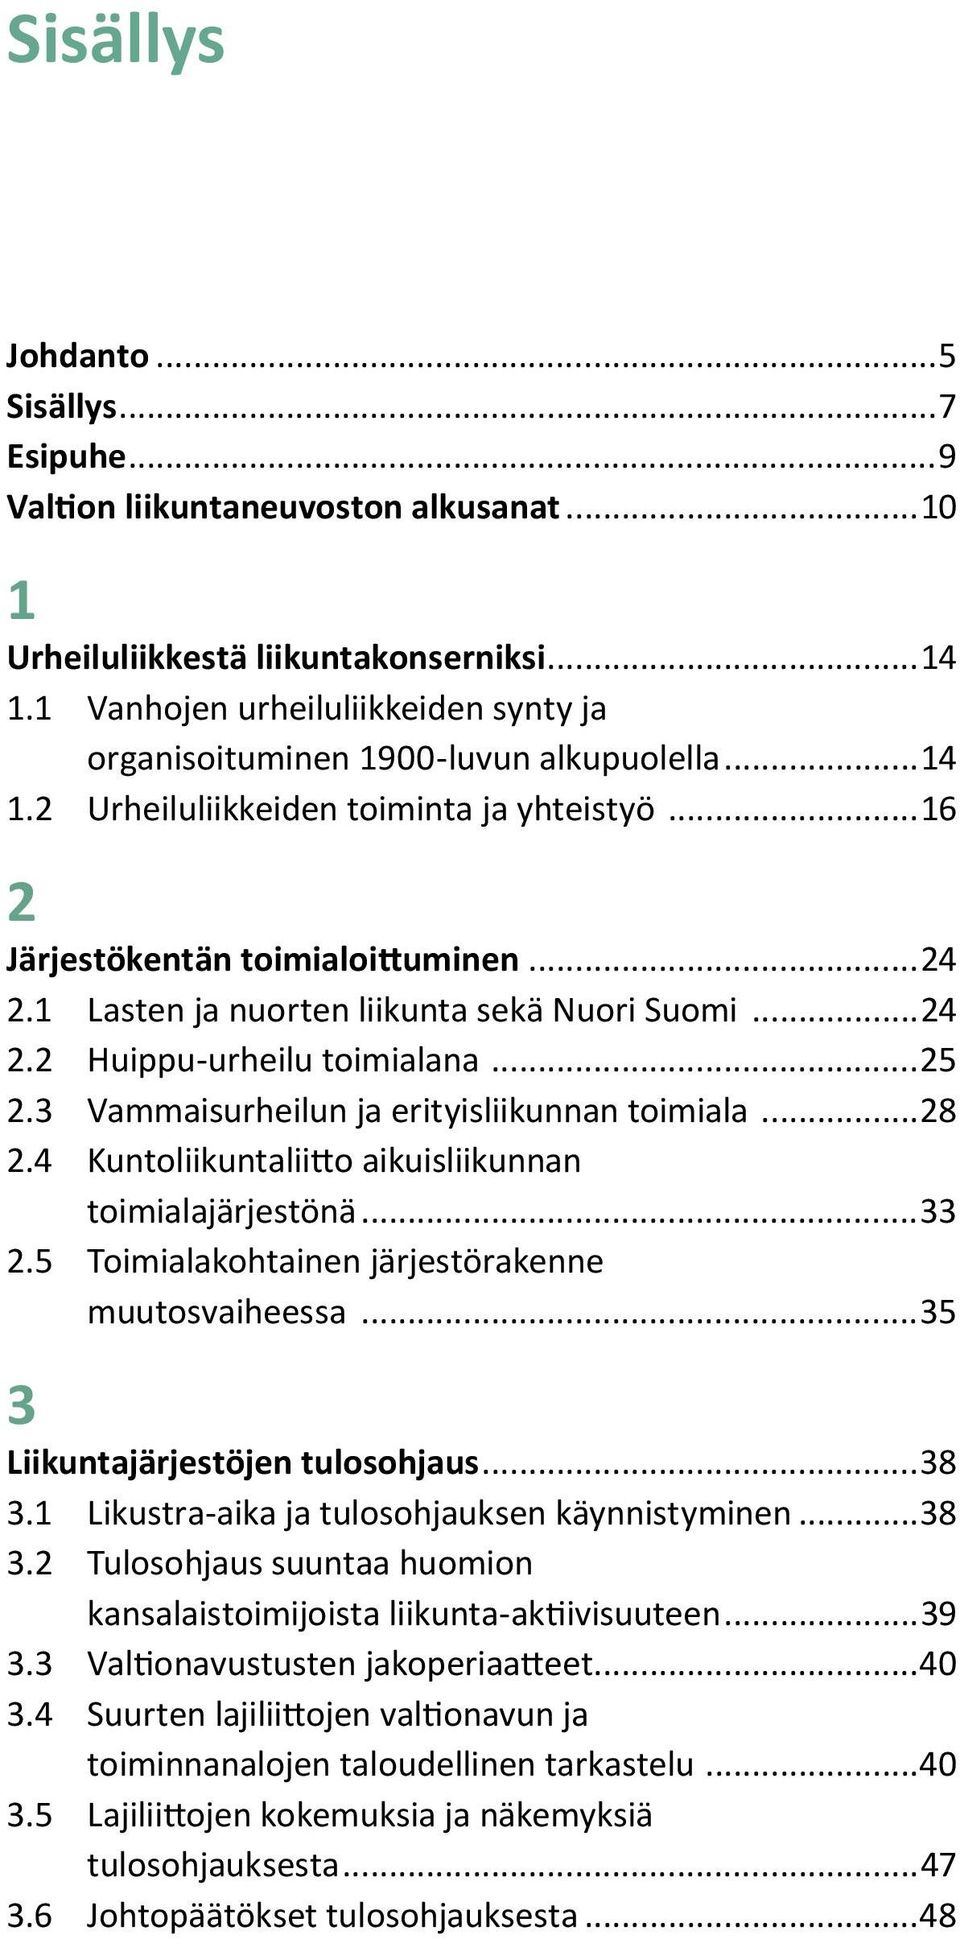 1 Lasten ja nuorten liikunta sekä Nuori Suomi...24 2.2 Huippu-urheilu toimialana...25 2.3 Vammaisurheilun ja erityisliikunnan toimiala...28 2.4 Kuntoliikuntaliitto aikuisliikunnan toimialajärjestönä.